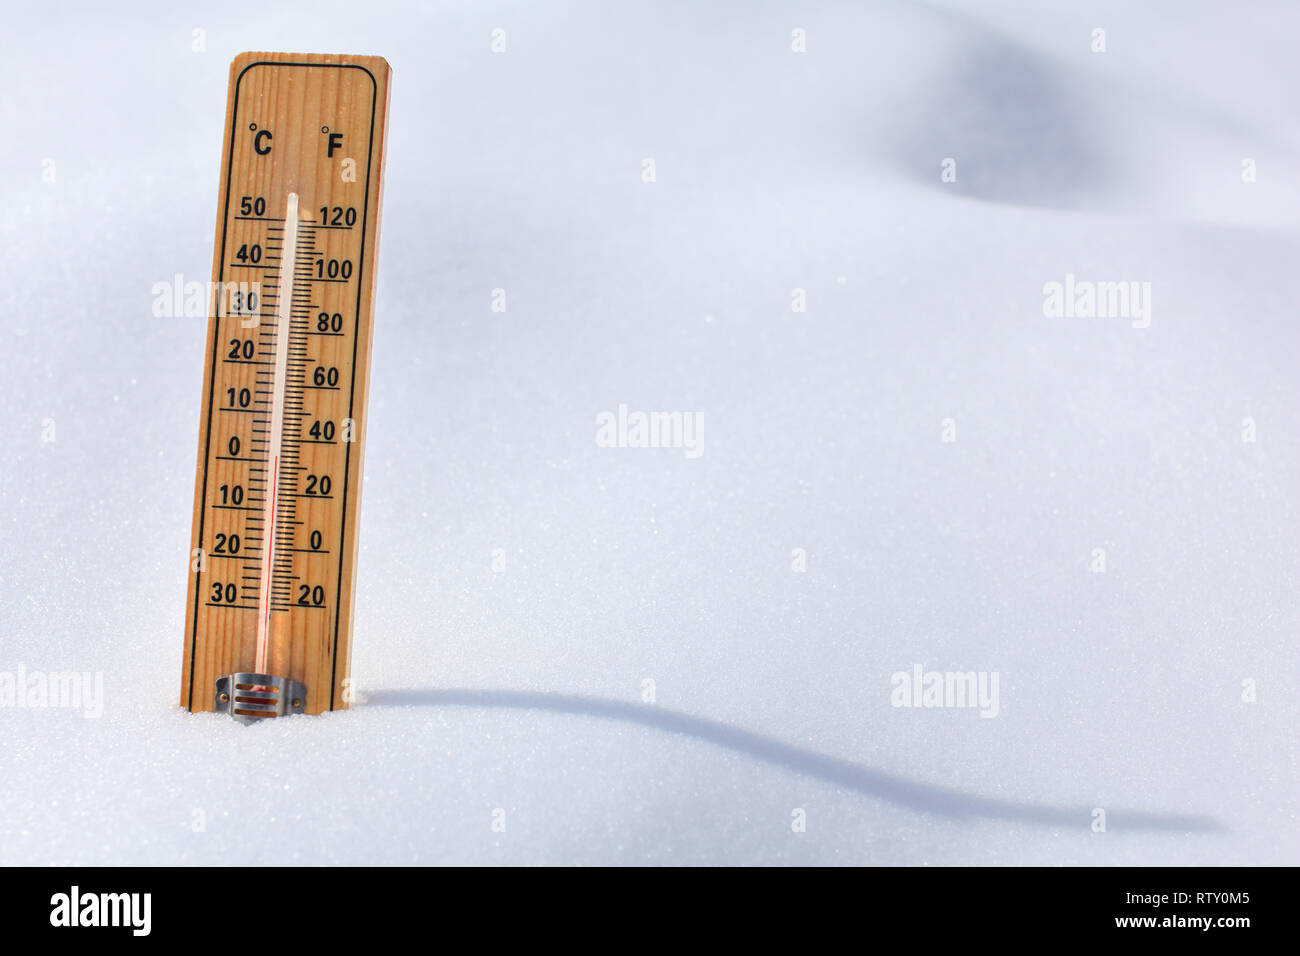 Thermomètre en bois debout dans la neige, soleil, ombre sinueuse coulée  colonne rouge montrant 0 degrés Celsius la température. Hiver / neige  prochains concept Photo Stock - Alamy